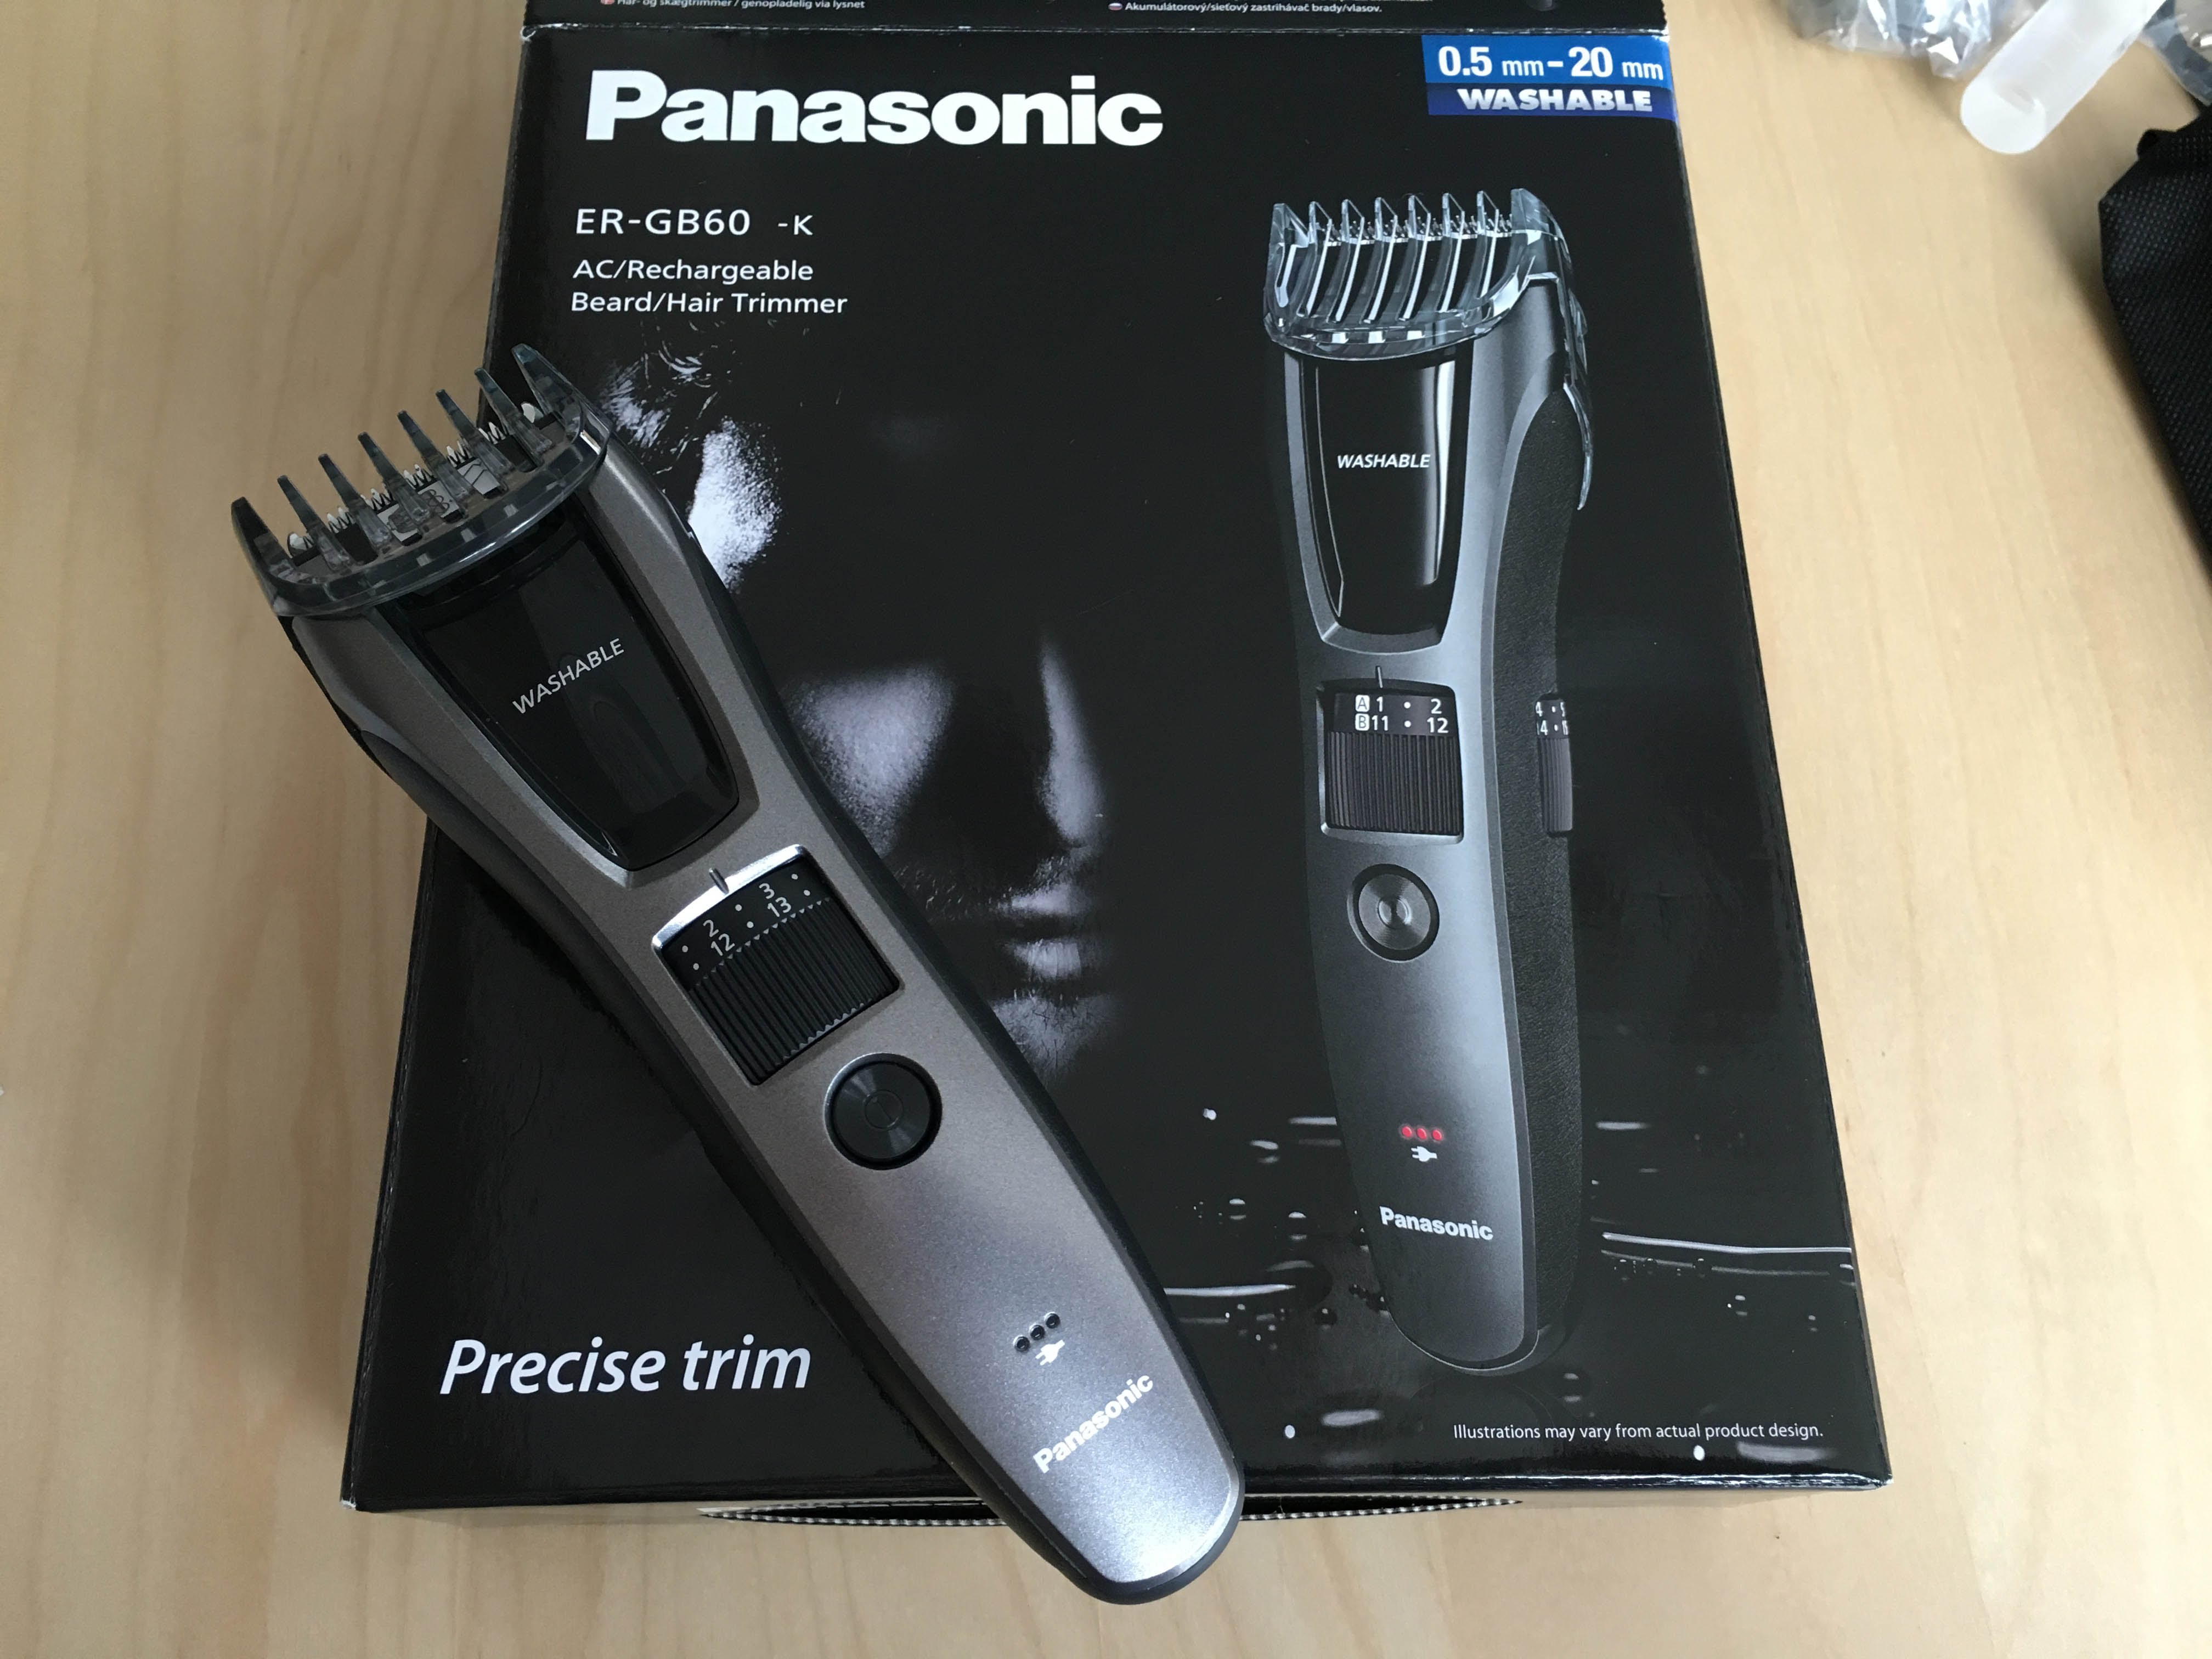 UNBOXING Panasonic ER-GB60-K Hair Trimmer - YouTube